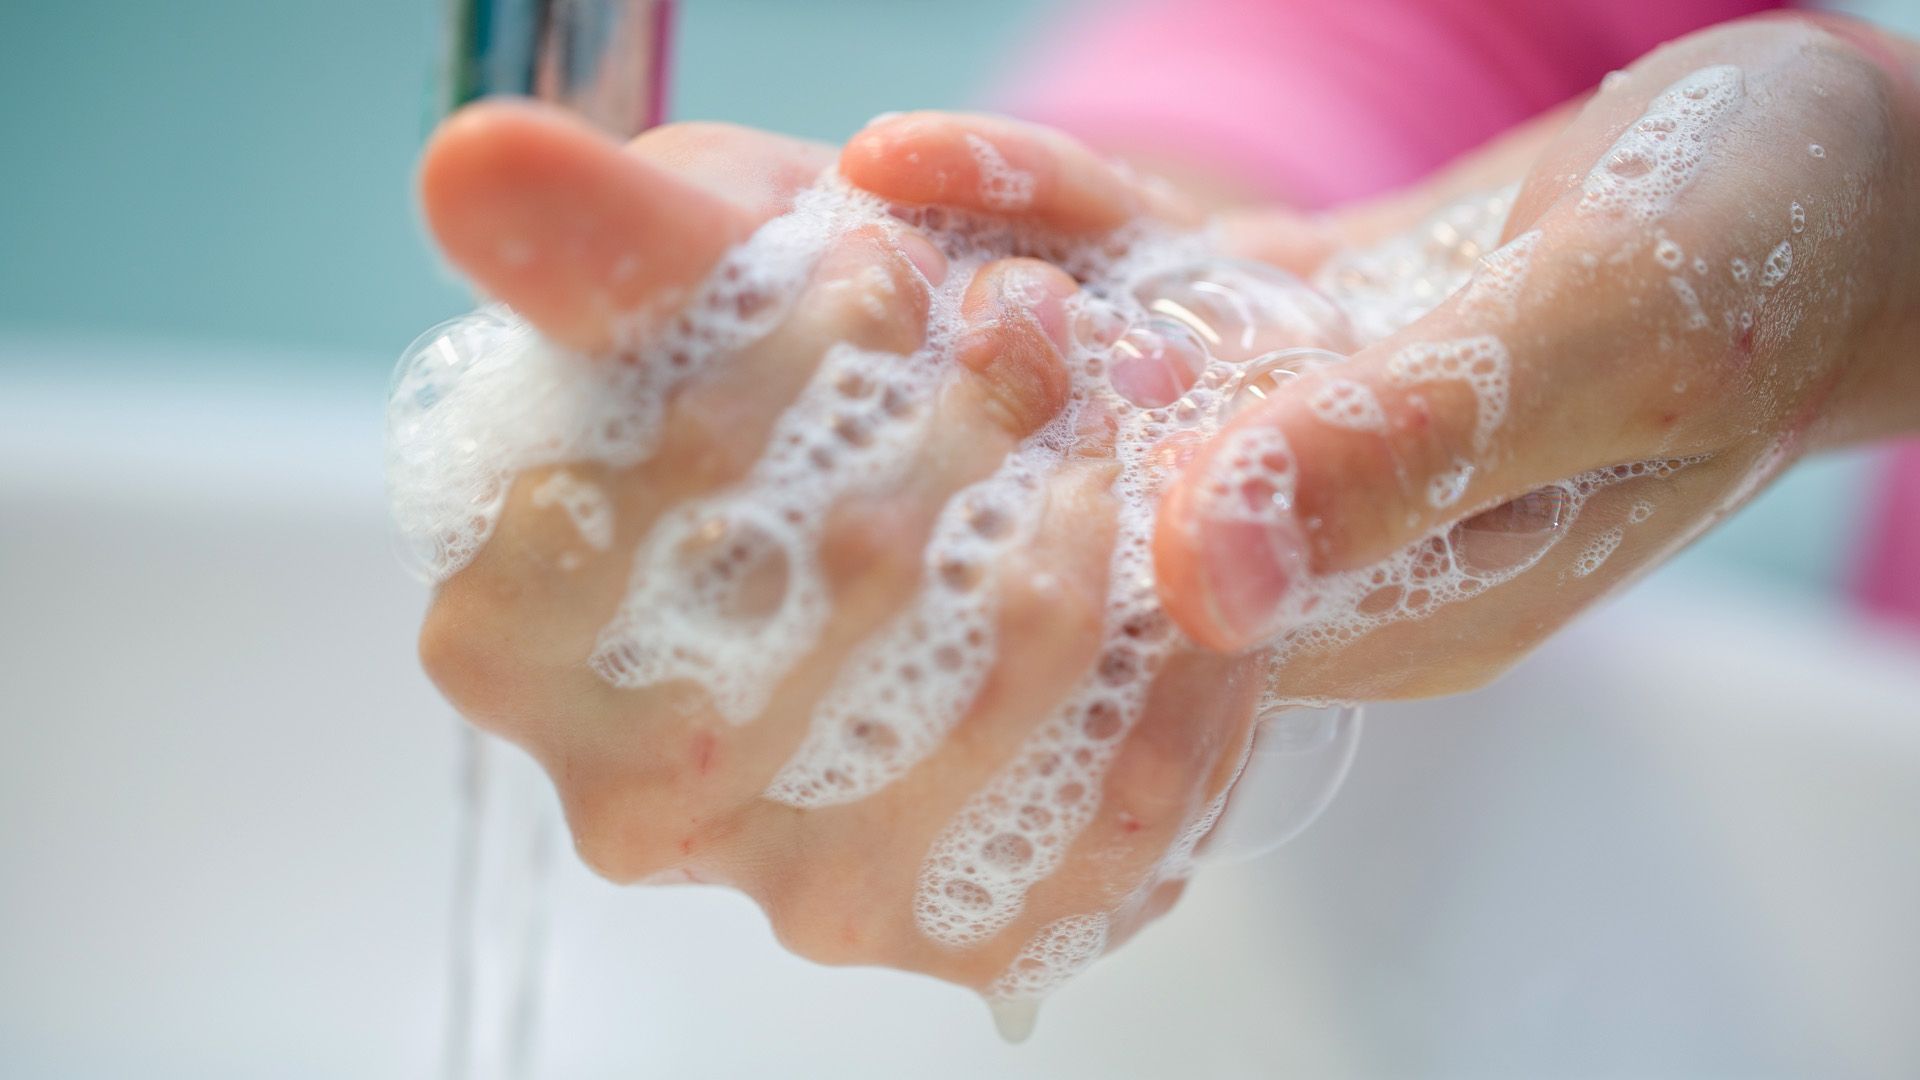 Seltener krank werden: Mit diesen Hygiene-Tipps für den Alltag klappt's!